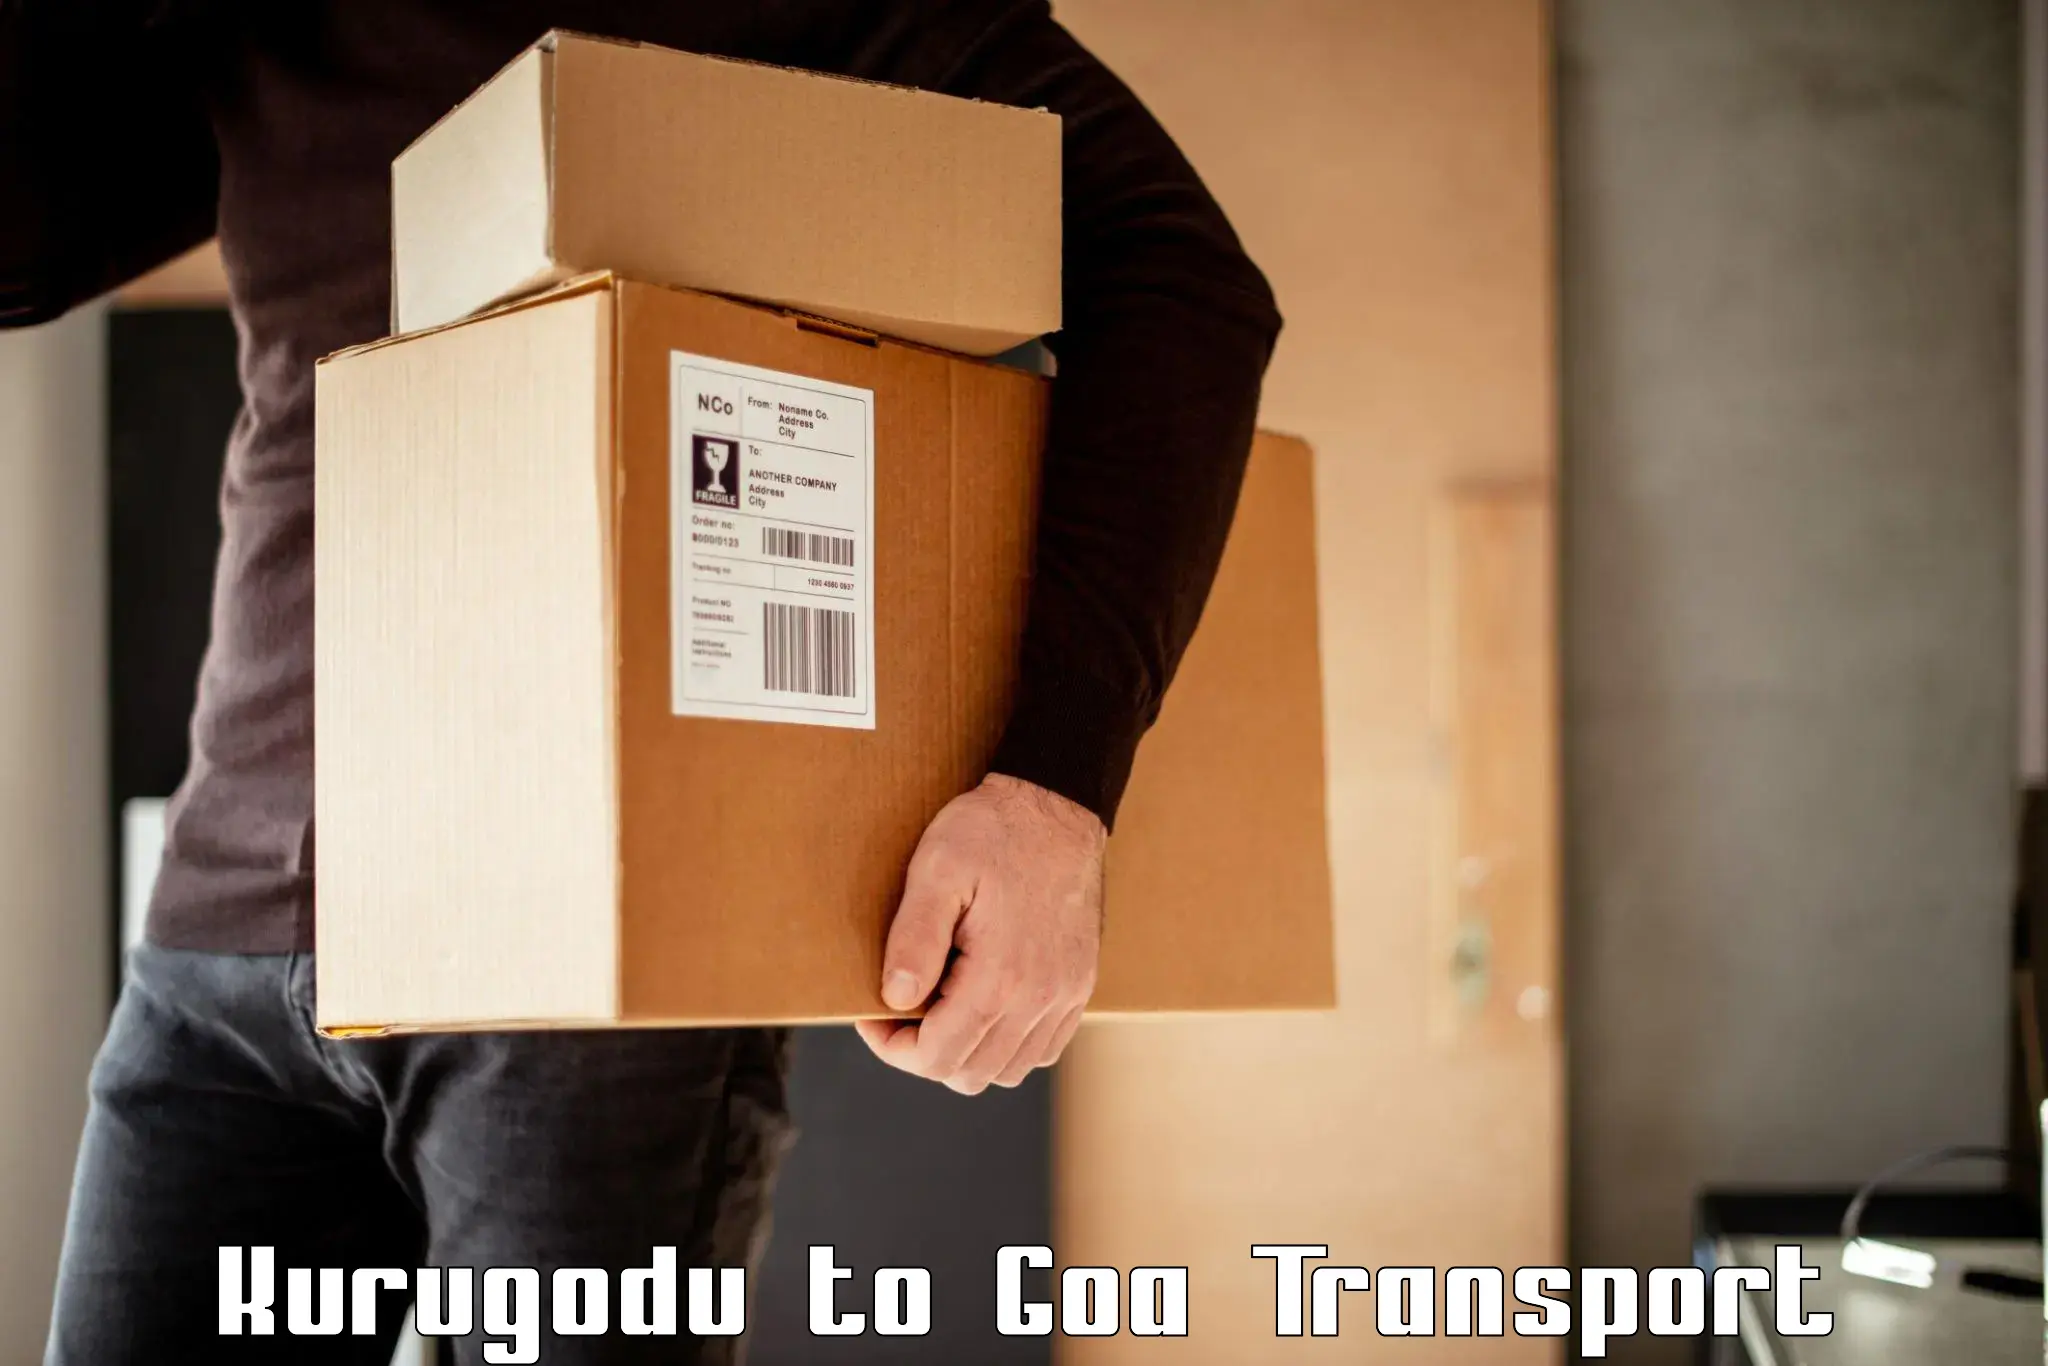 Transport shared services Kurugodu to Goa University